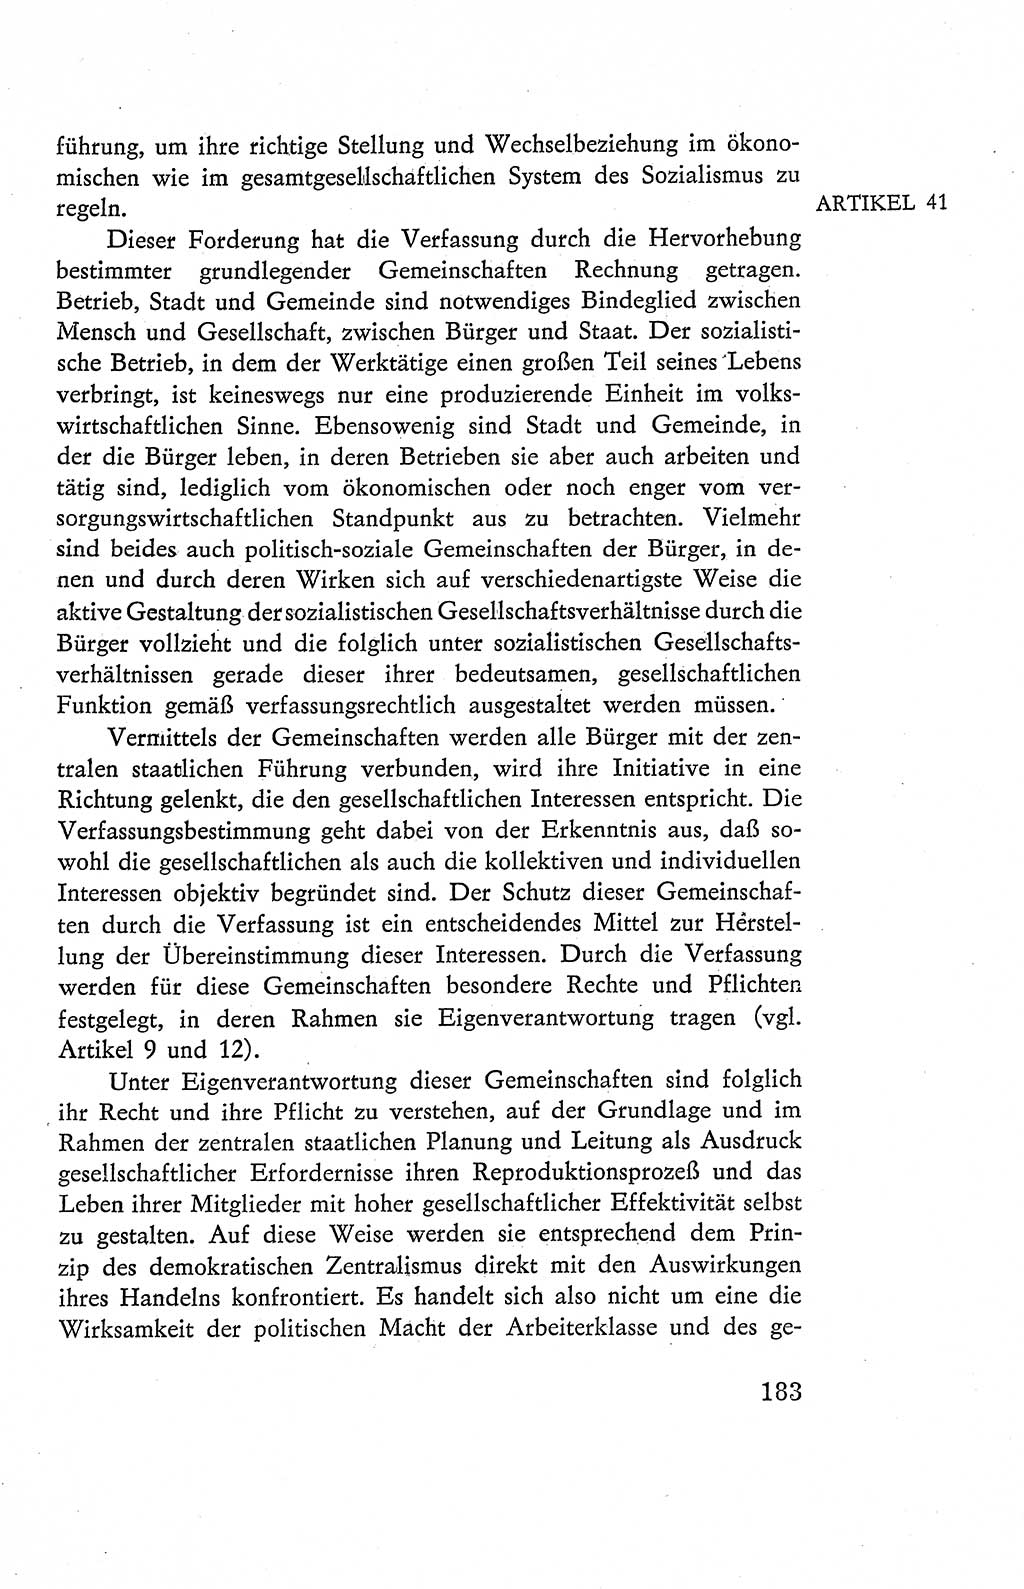 Verfassung der Deutschen Demokratischen Republik (DDR), Dokumente, Kommentar 1969, Band 2, Seite 183 (Verf. DDR Dok. Komm. 1969, Bd. 2, S. 183)